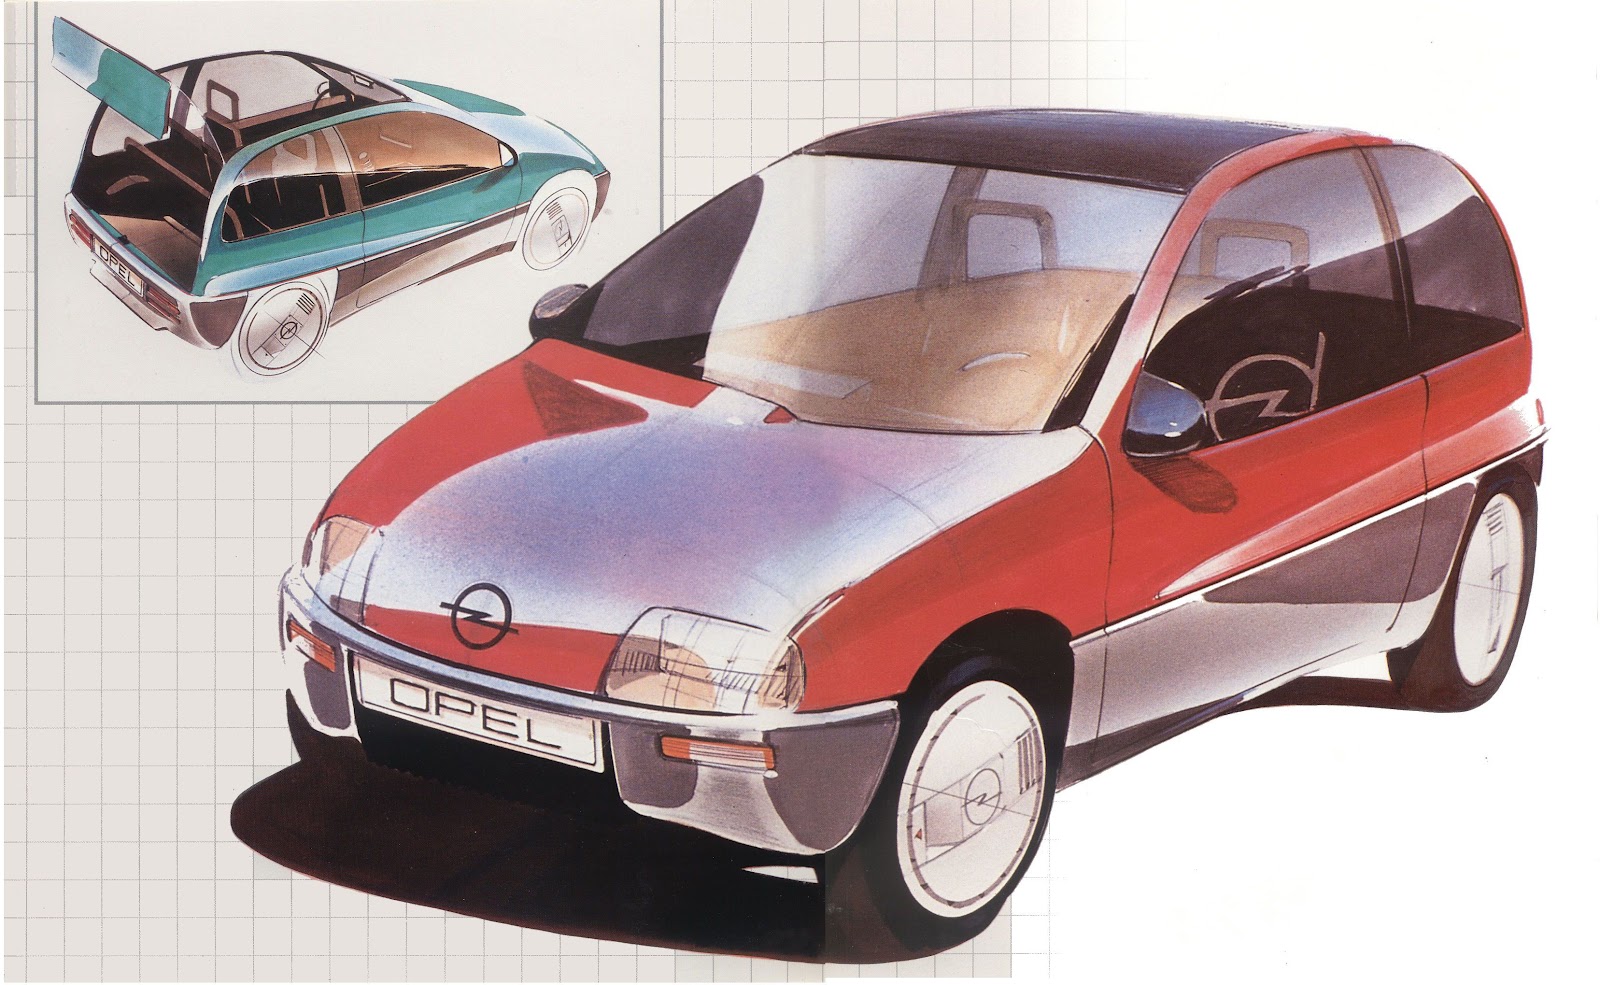 Opel Junior Concept, 1983 - Design Sketch